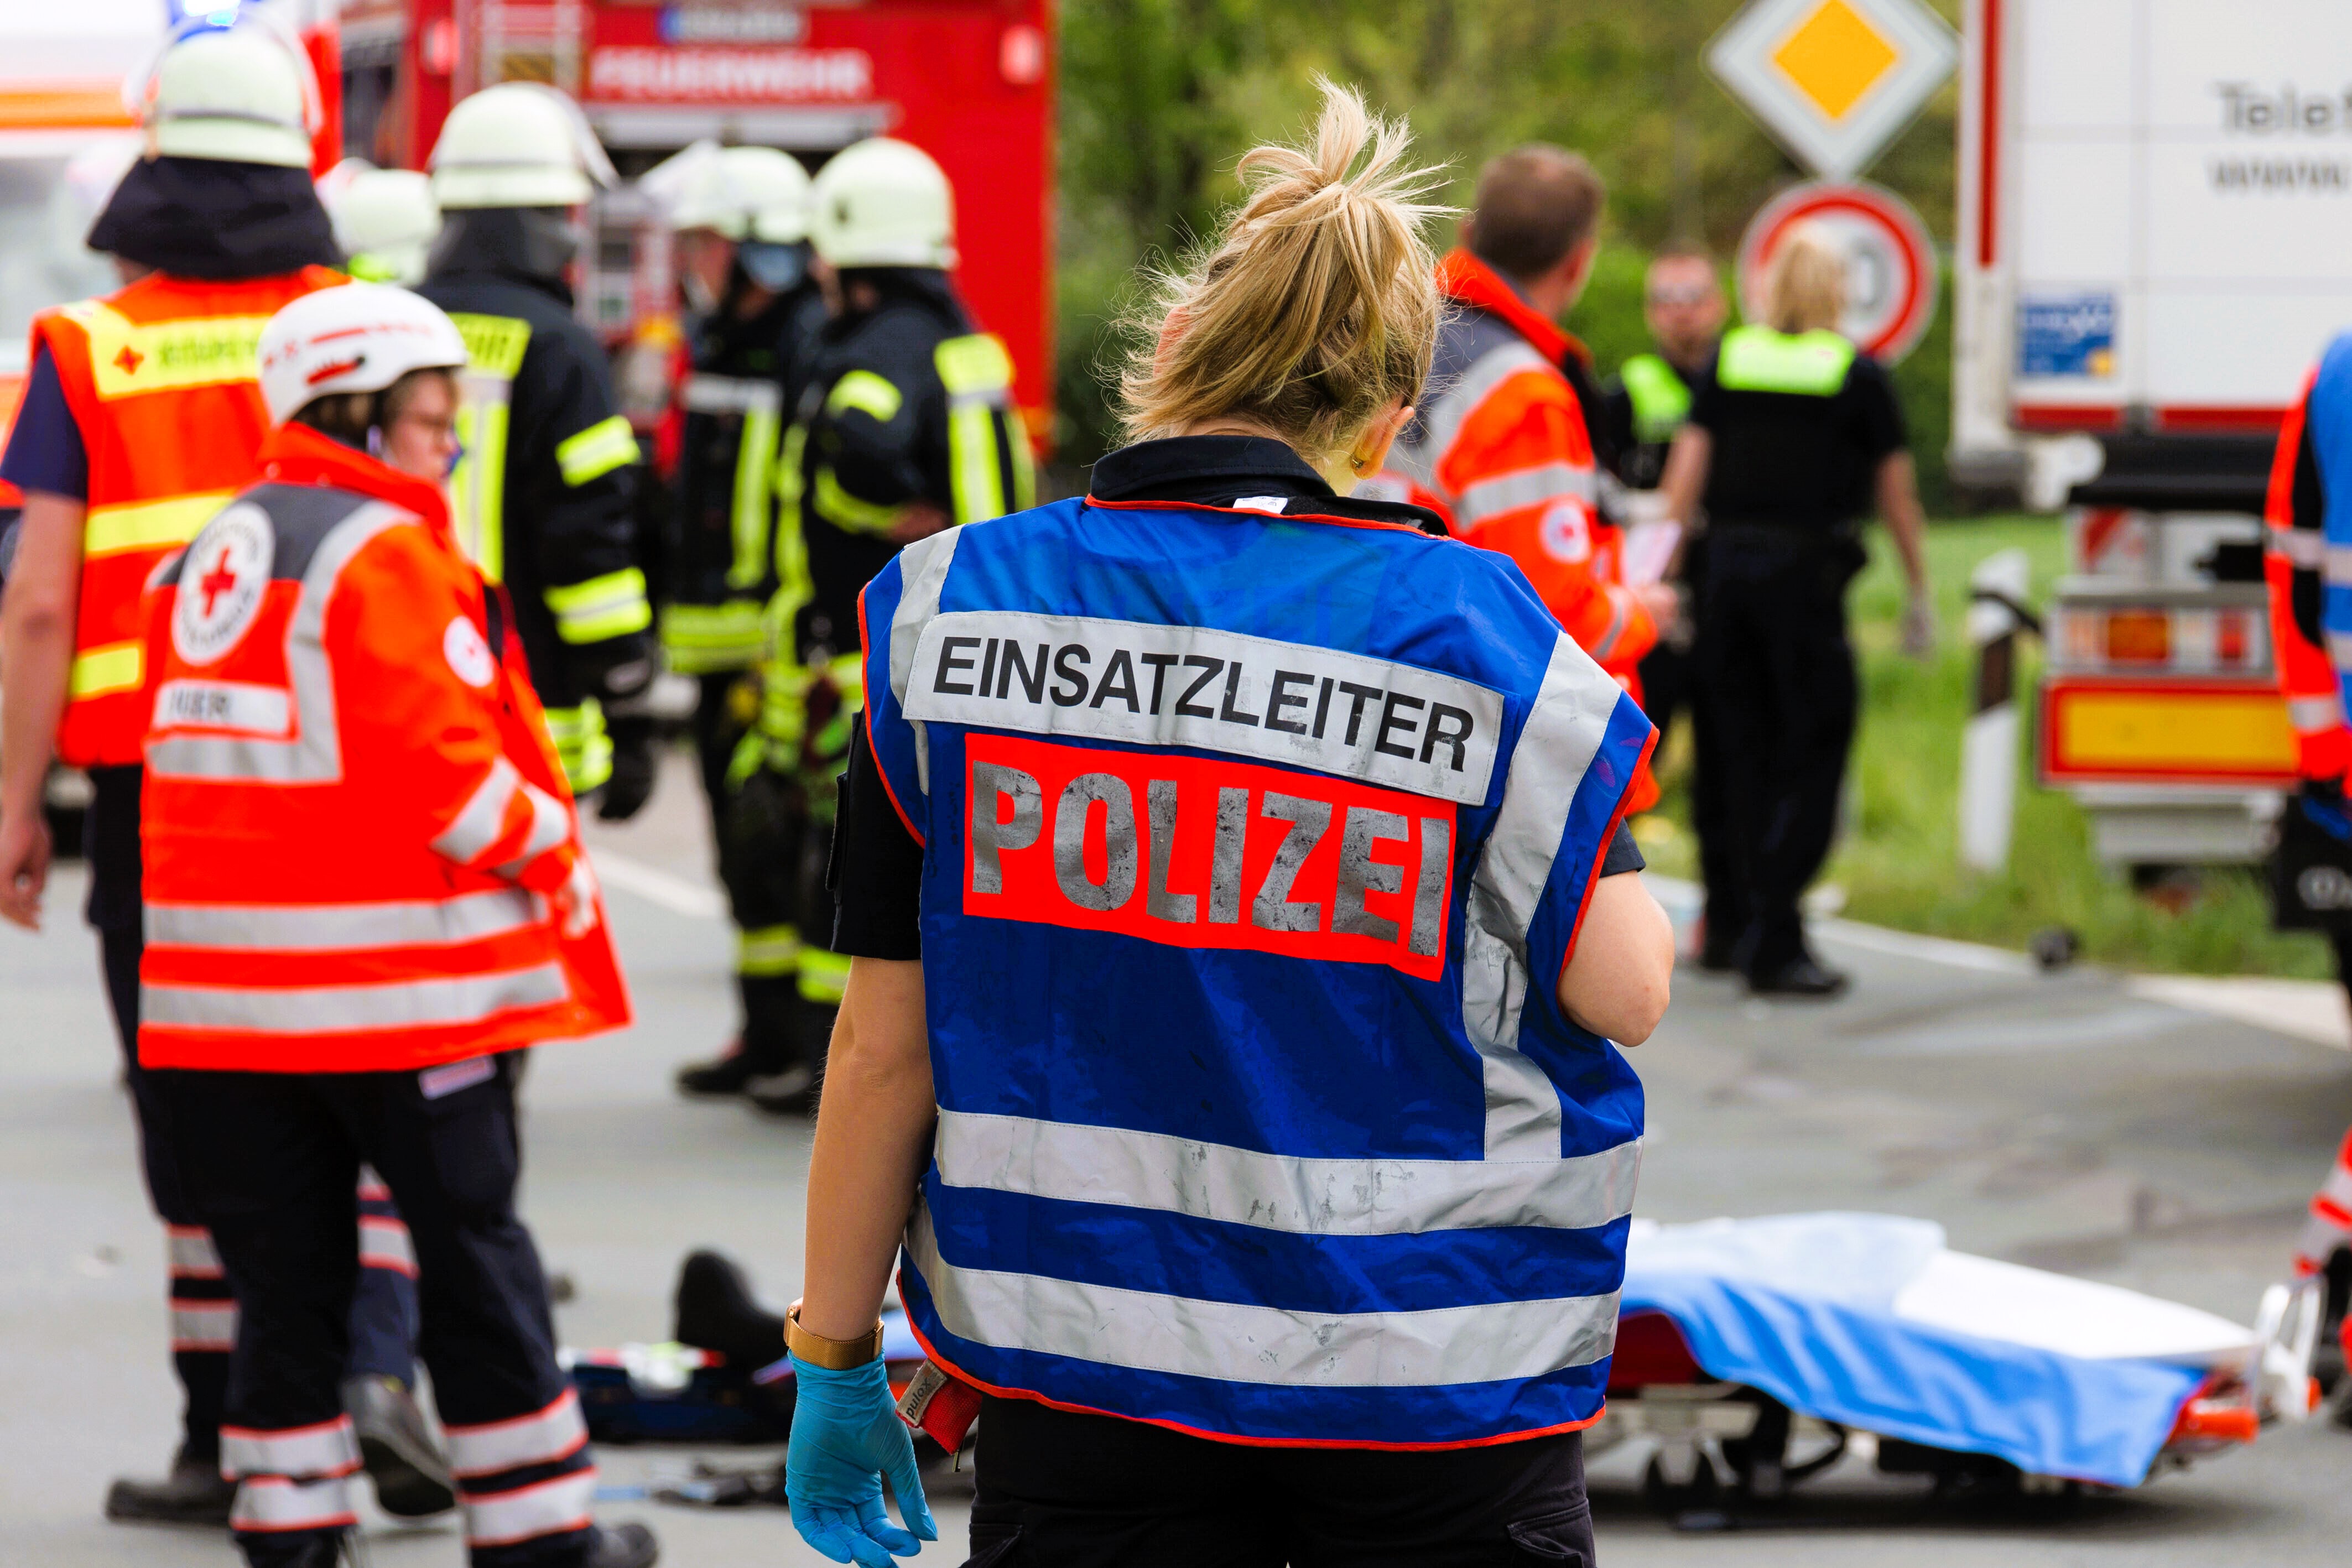 Rettungswagen verunglückt im Einsatz! Mehrere Verletzte - schwere Unfall bei Einsatz-Fahrt!